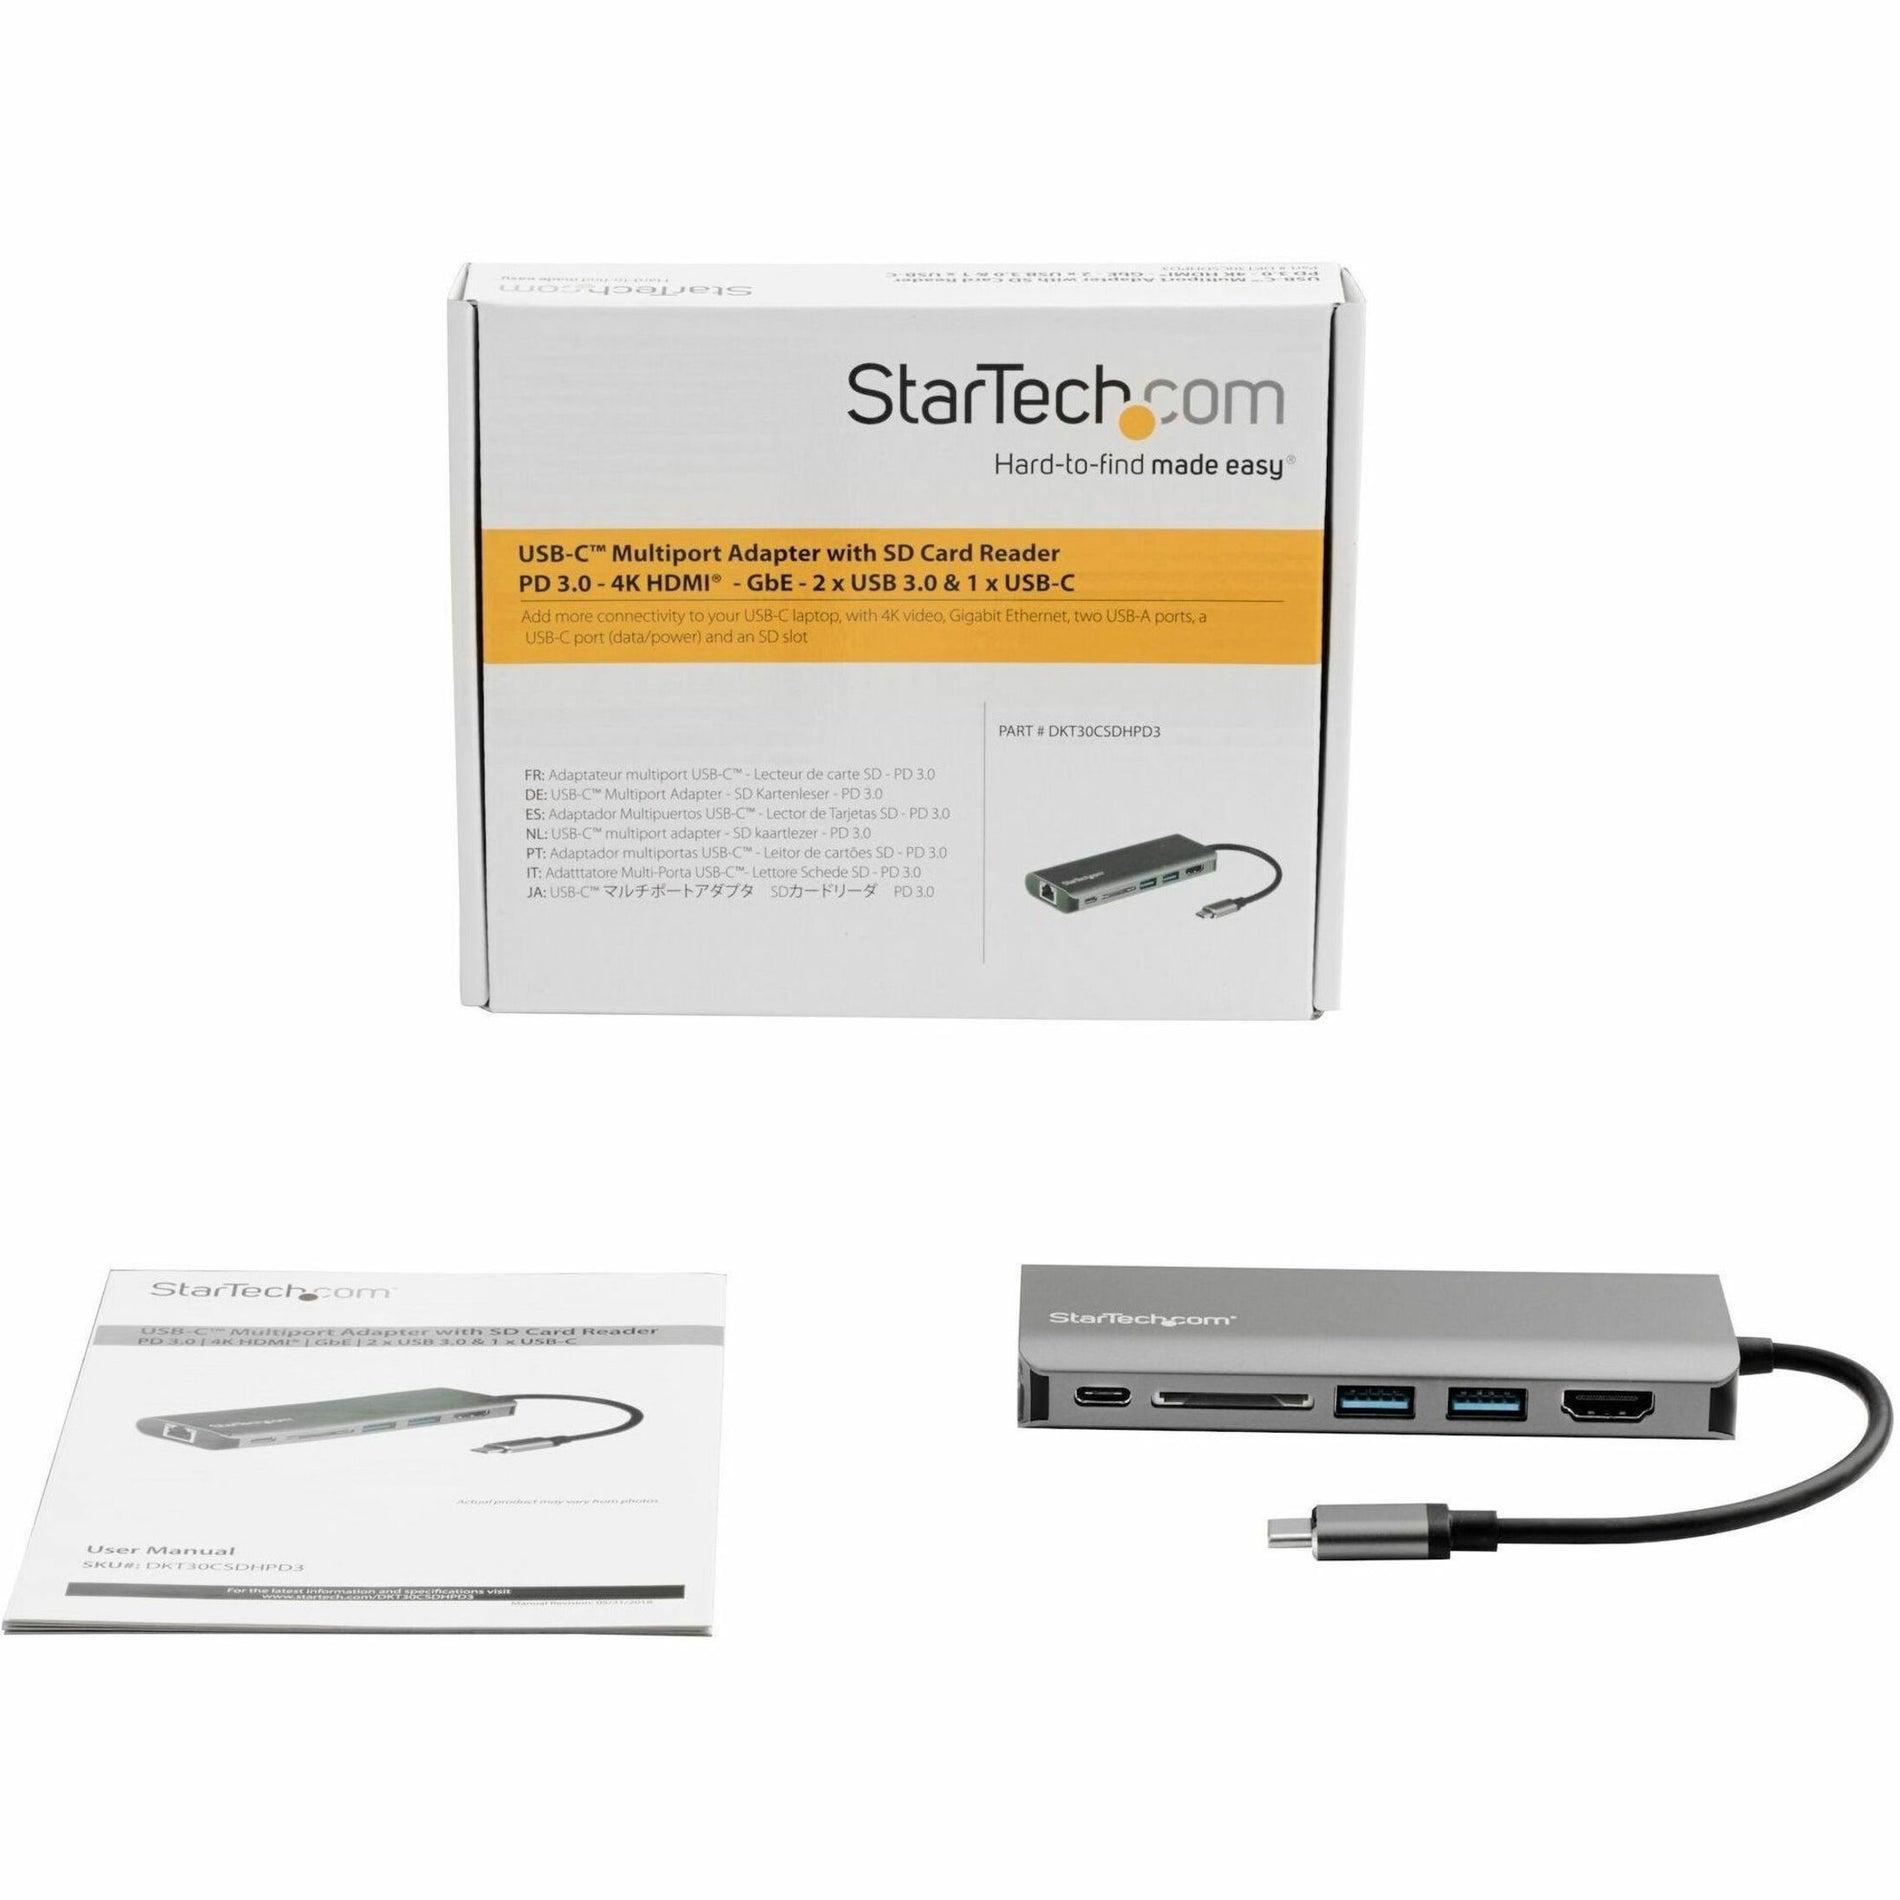 Adaptateur multiport USB-C StarTech.com avec HDMI - Lecteur SD - PD 3.0 affichage 4K Ethernet Gigabit